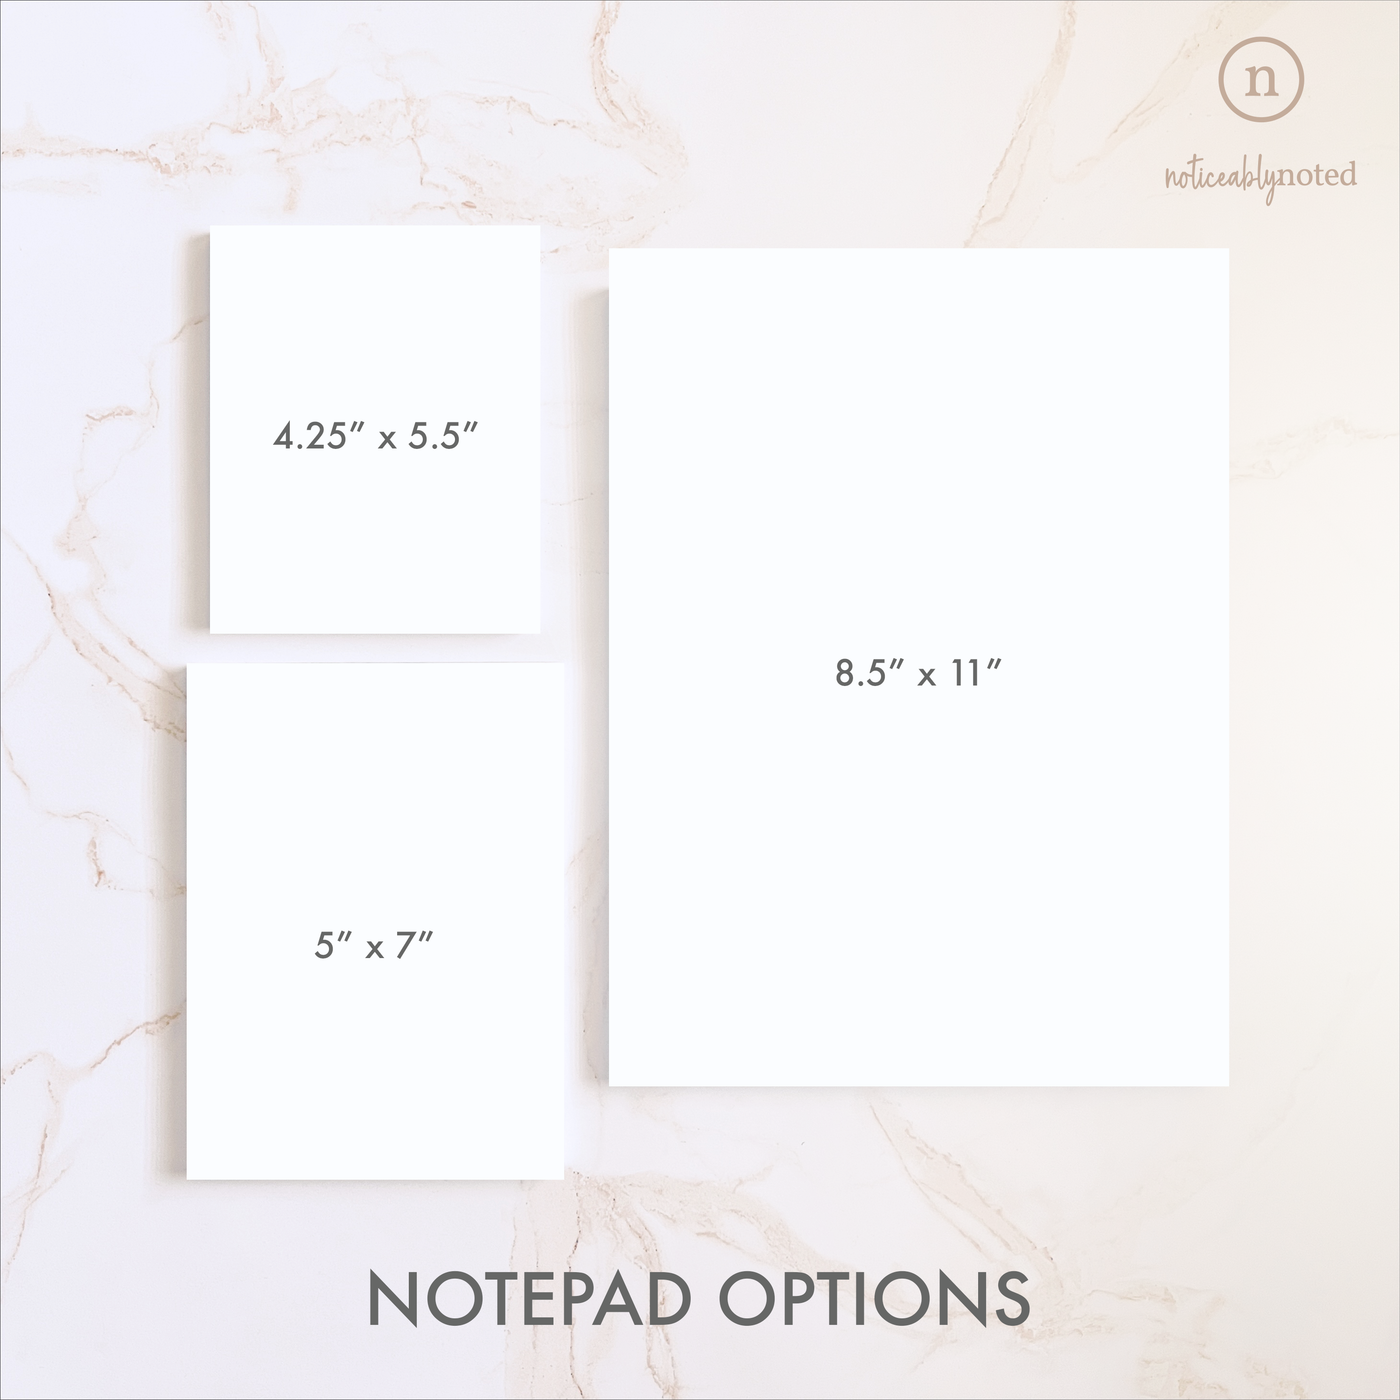 Crawfish Personalized Notepad